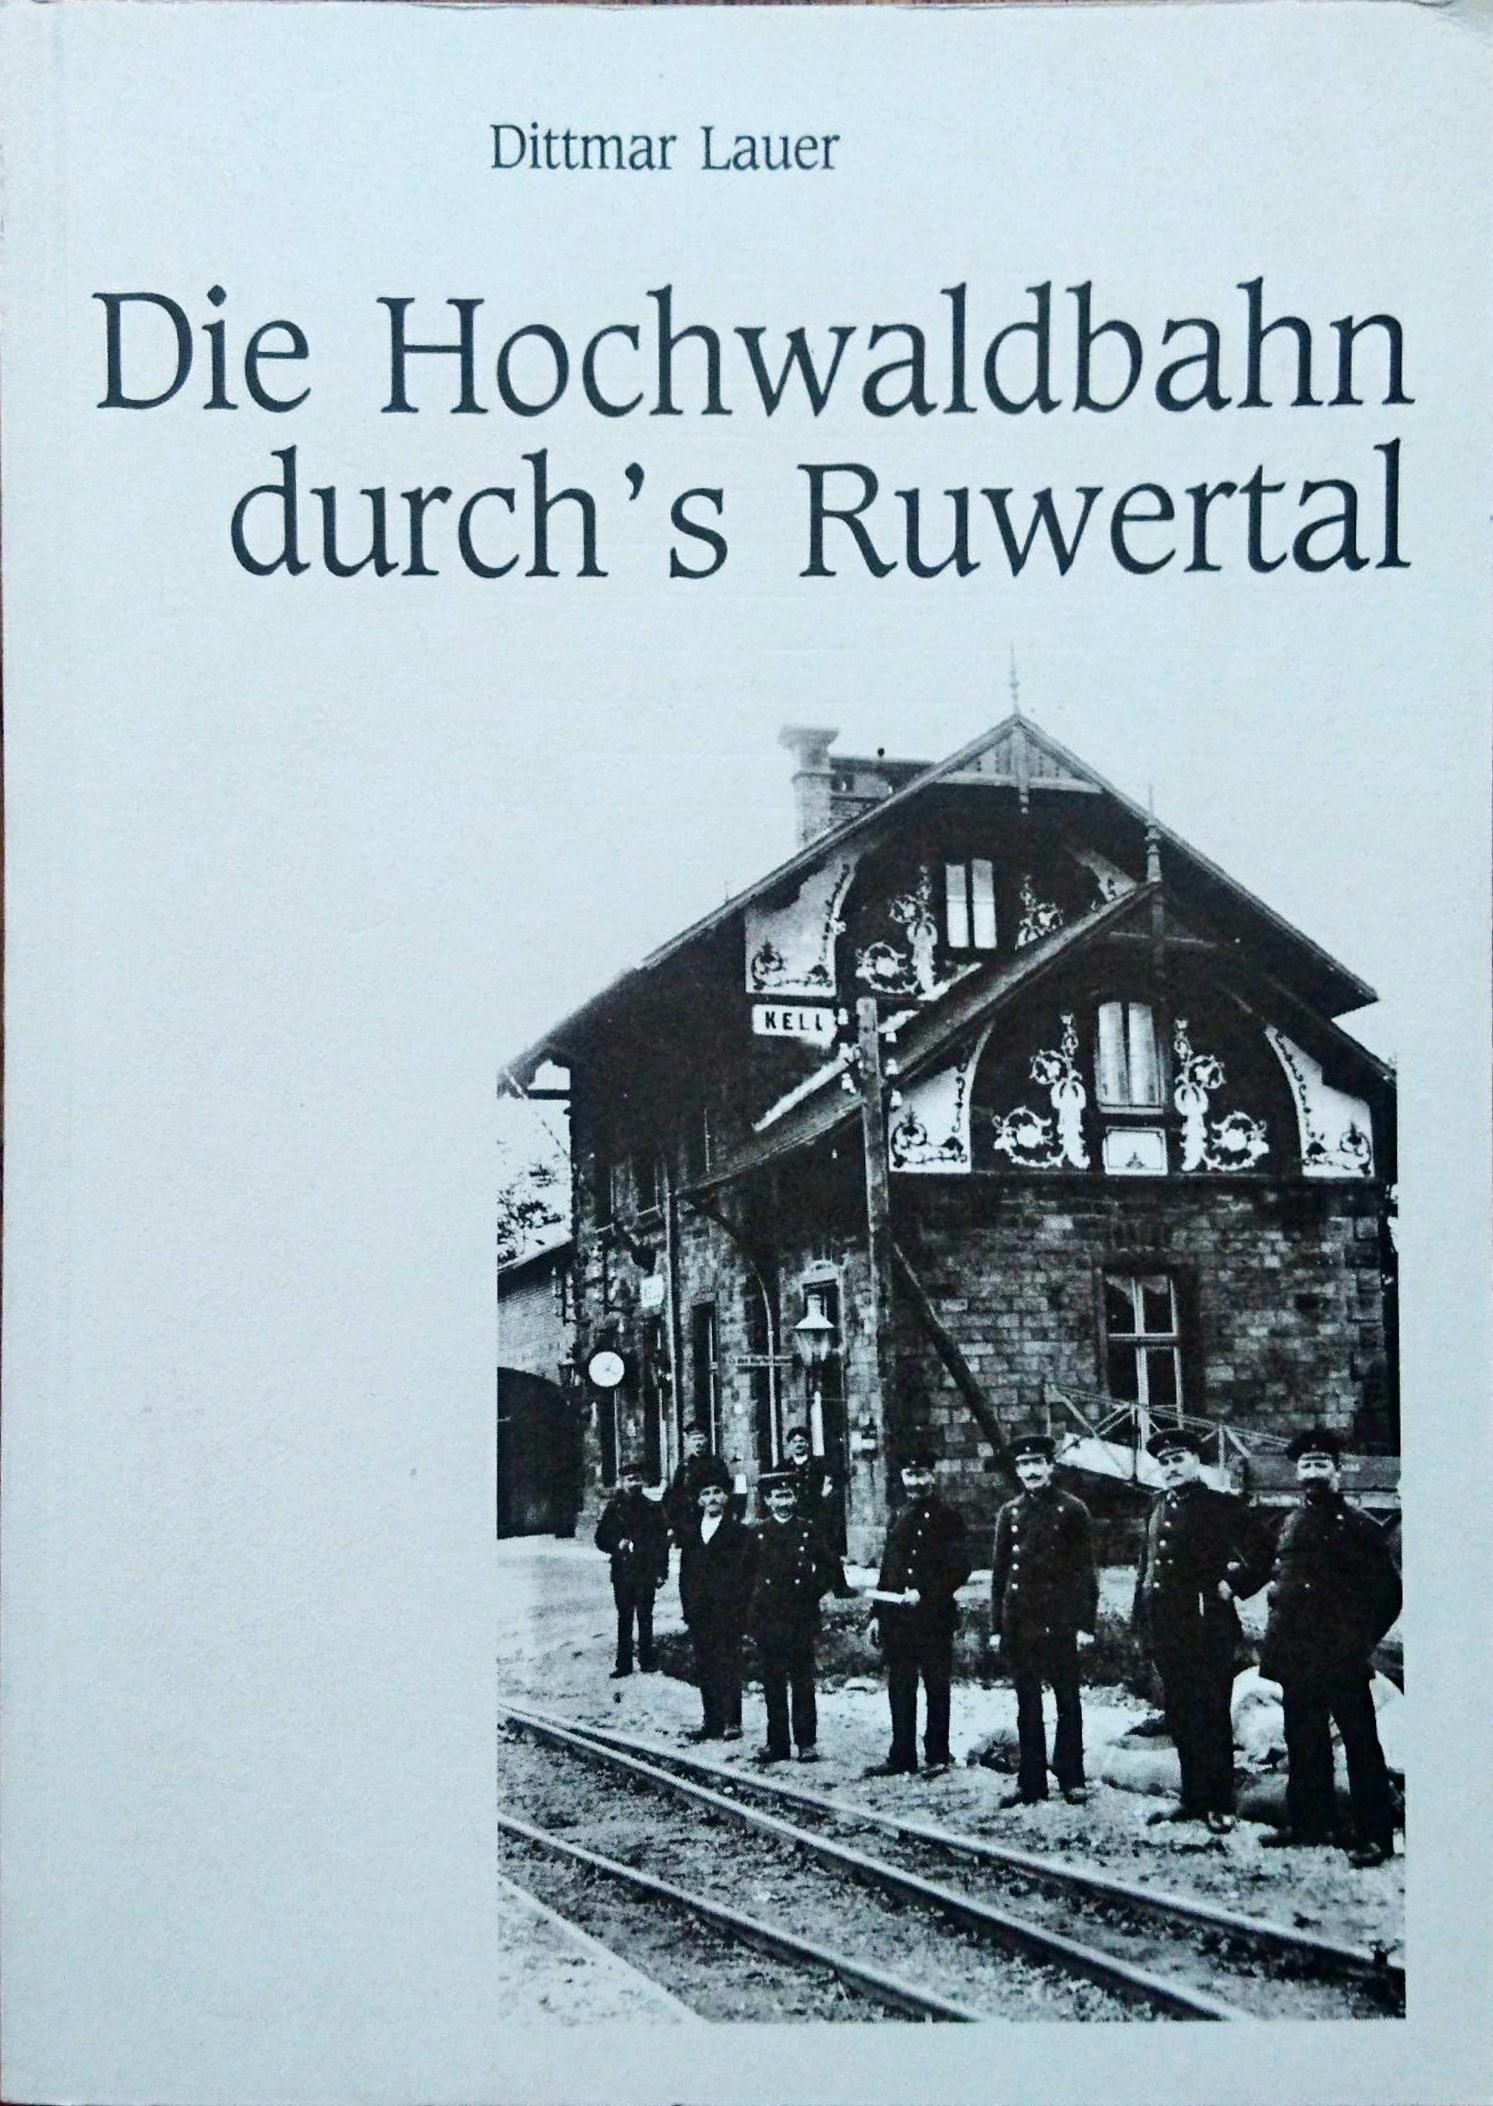 DieHochwaldbahnDurchsRuwertal.jpg